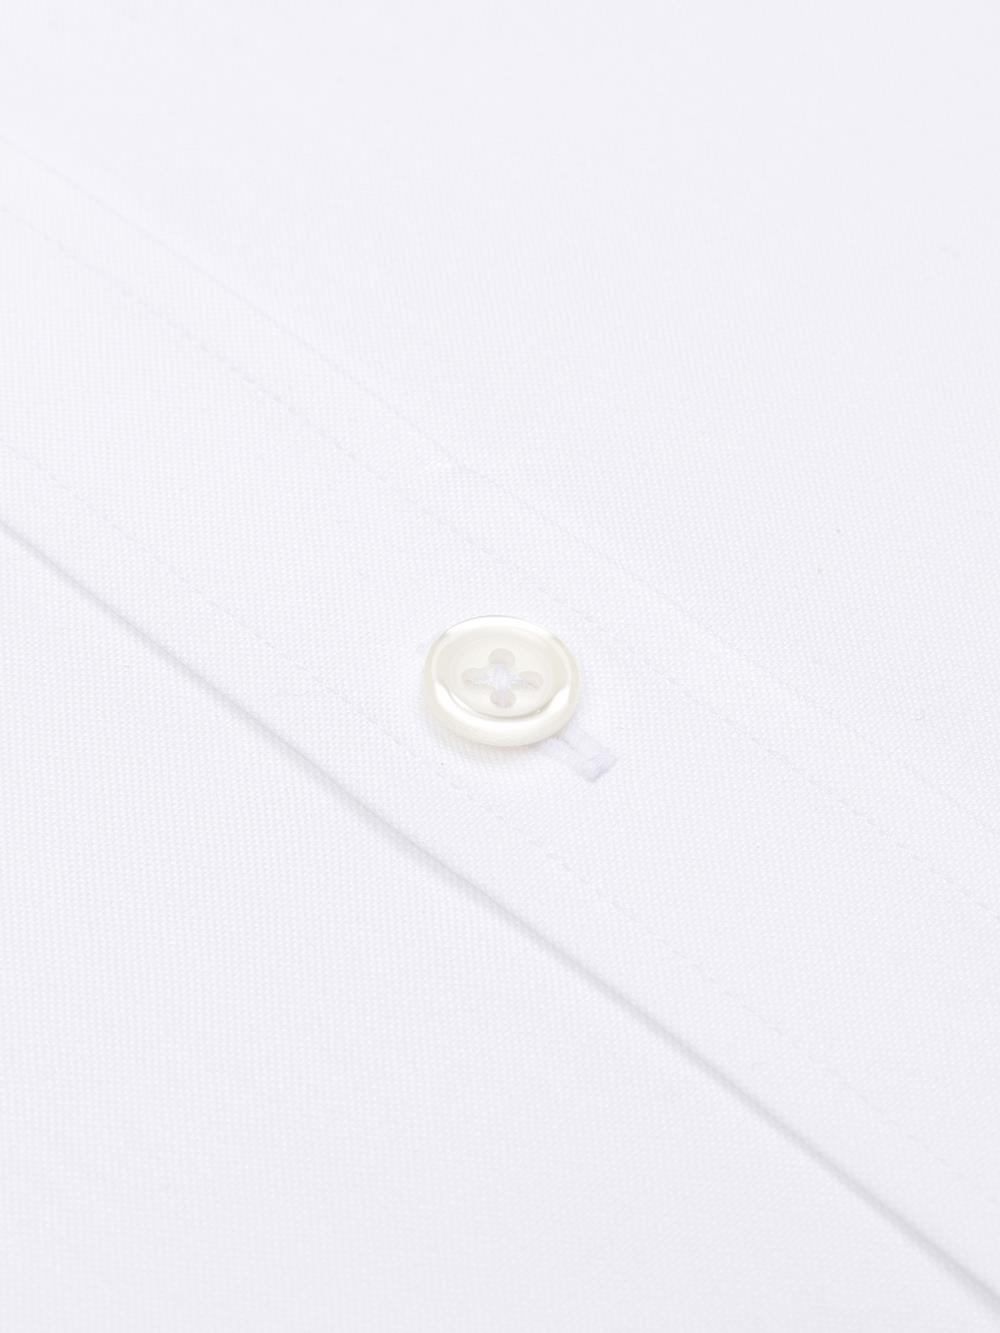 Camicia slim fit a punta bianca - Colletto piccolo